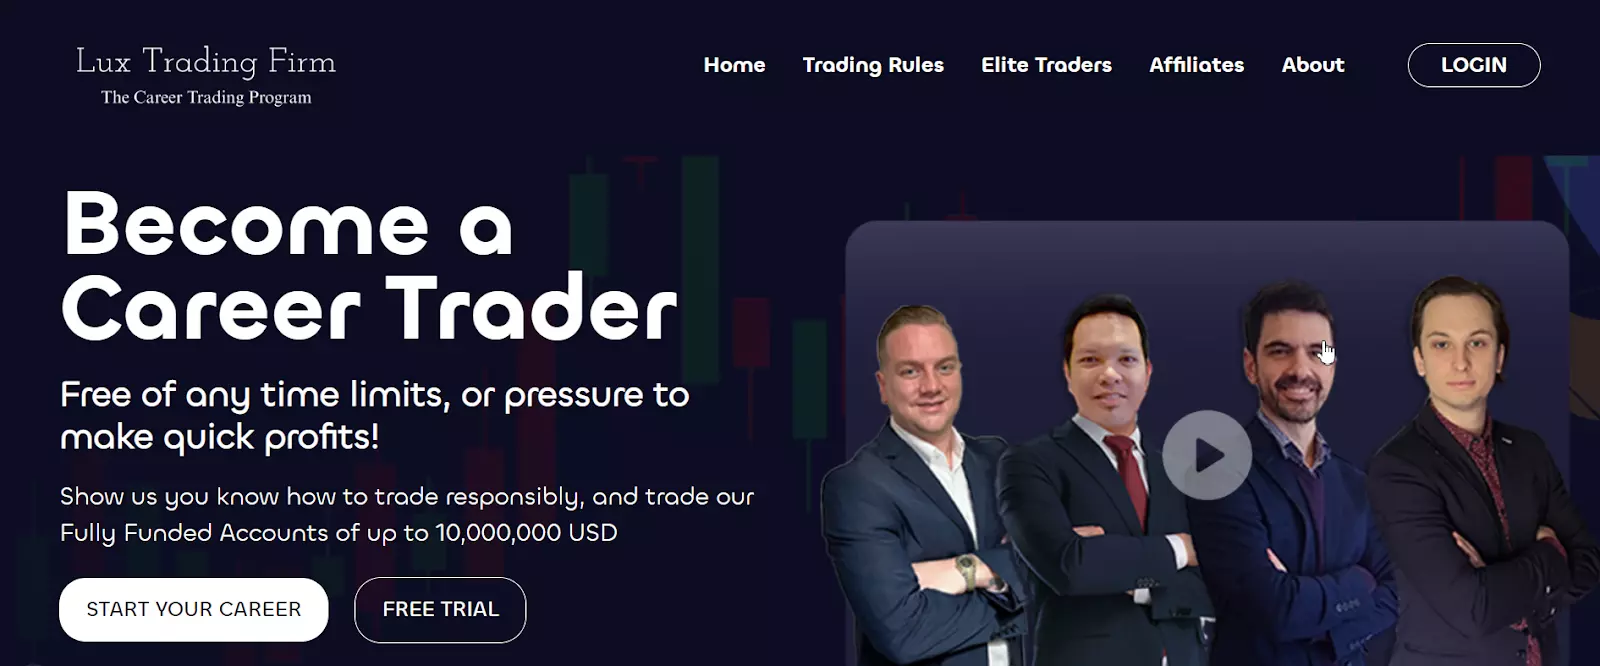 Avaliação do Lux Trading Firm - Teste gratuito